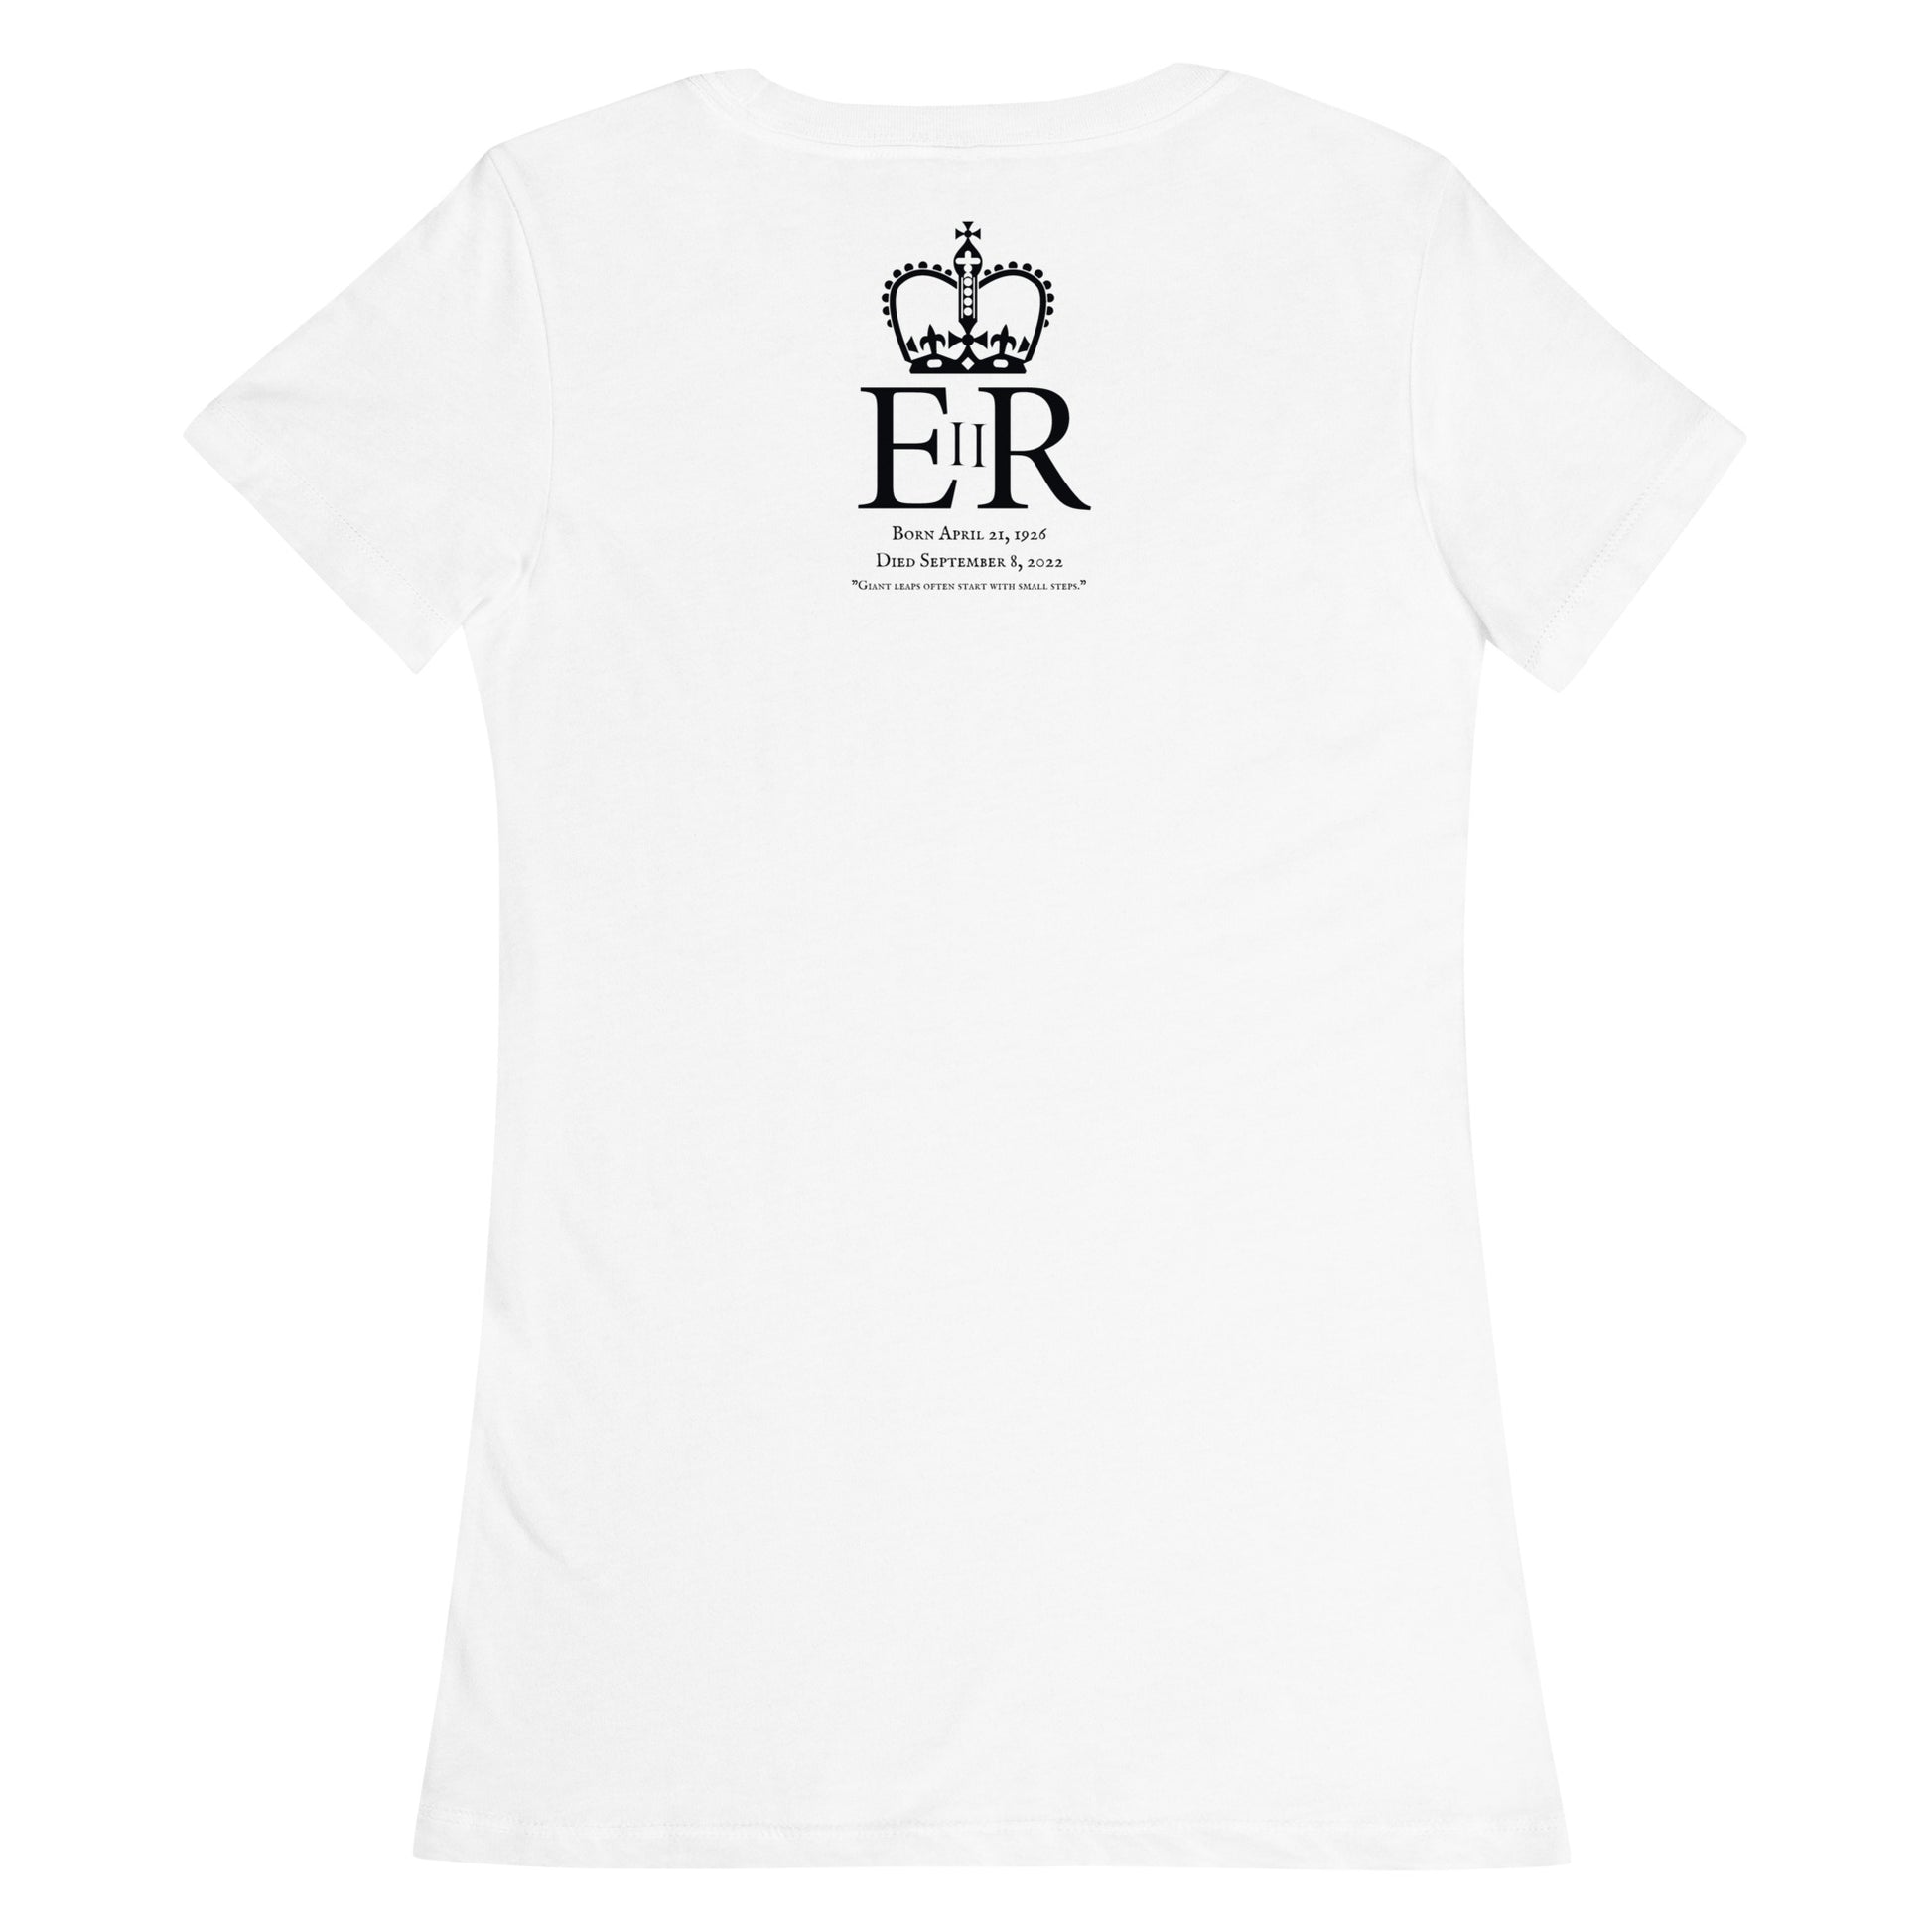 Dead Queens - Queen Elizabeth II T-Shirt - Back Art